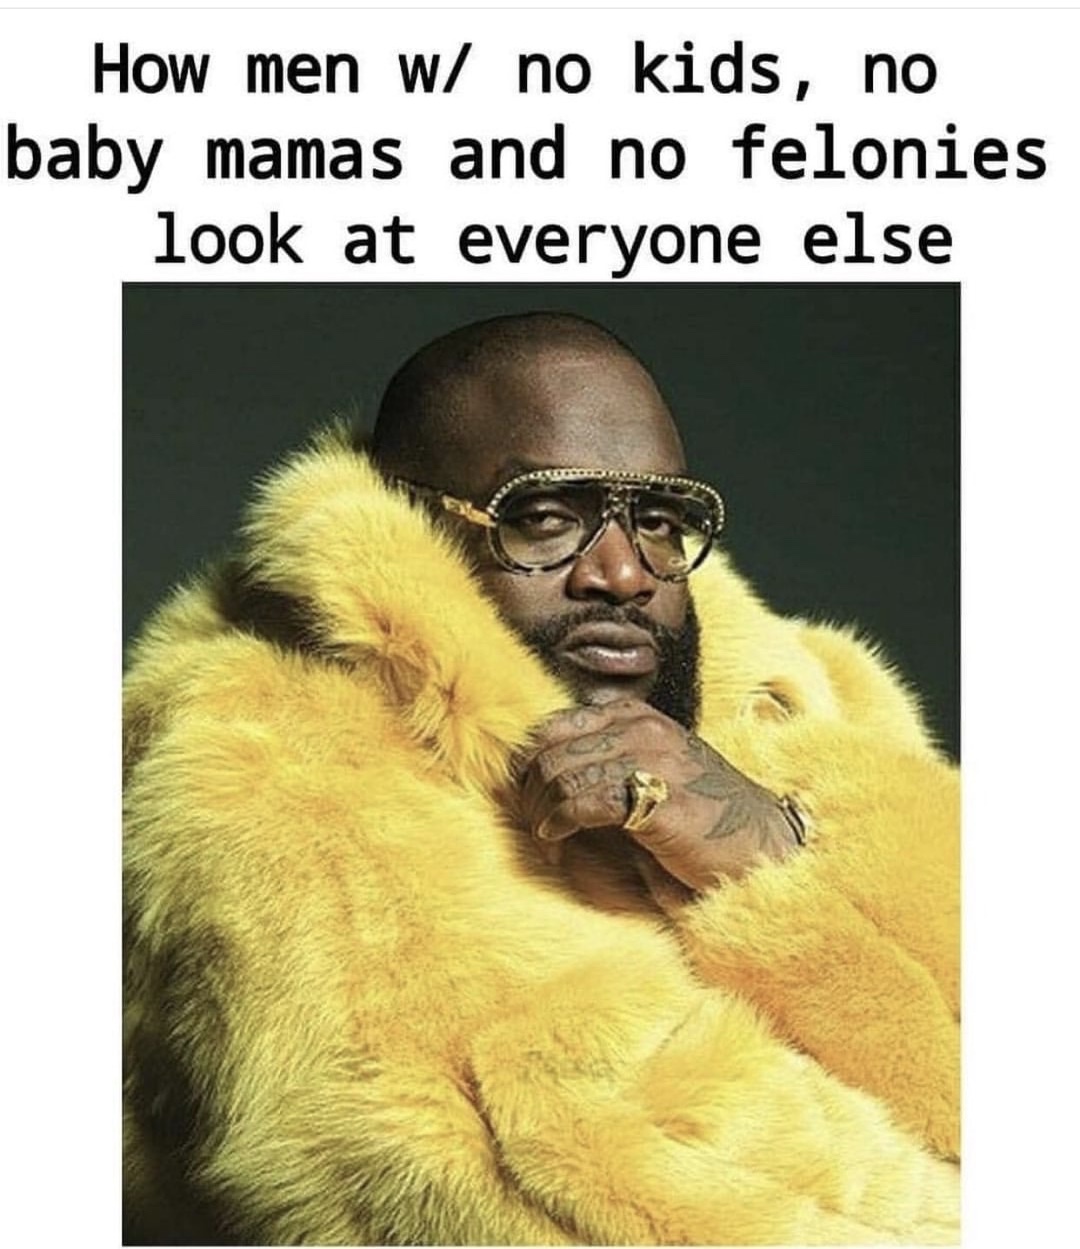 man with no kids meme - How men w no kids, no baby mamas and no felonies look at everyone else